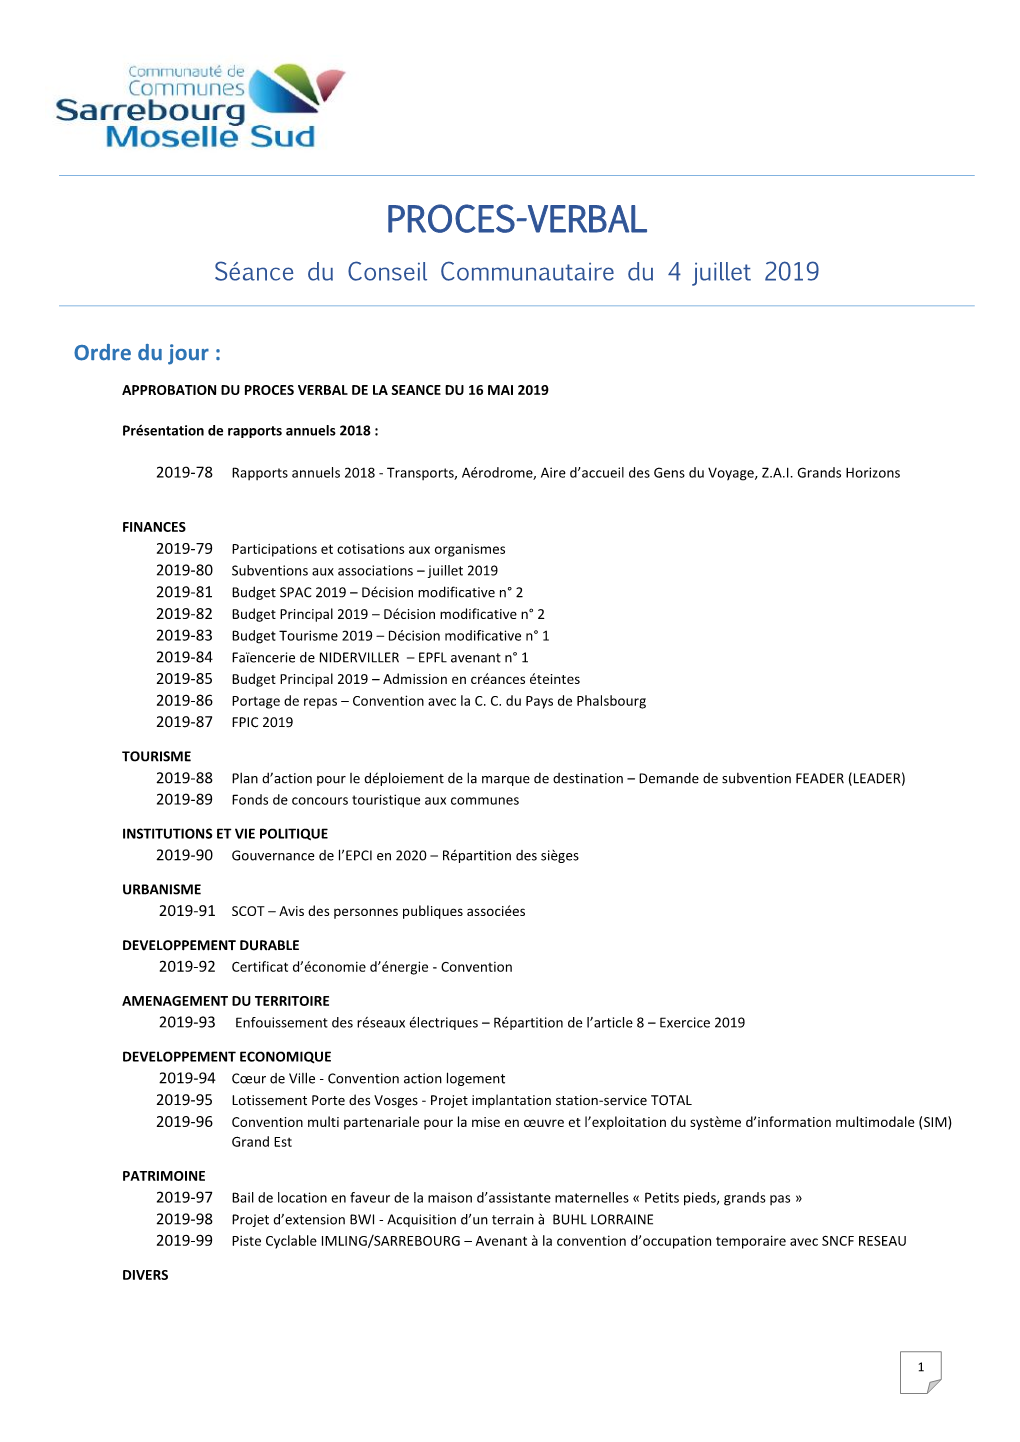 PROCES-VERBAL Séance Du Conseil Communautaire Du 4 Juillet 2019